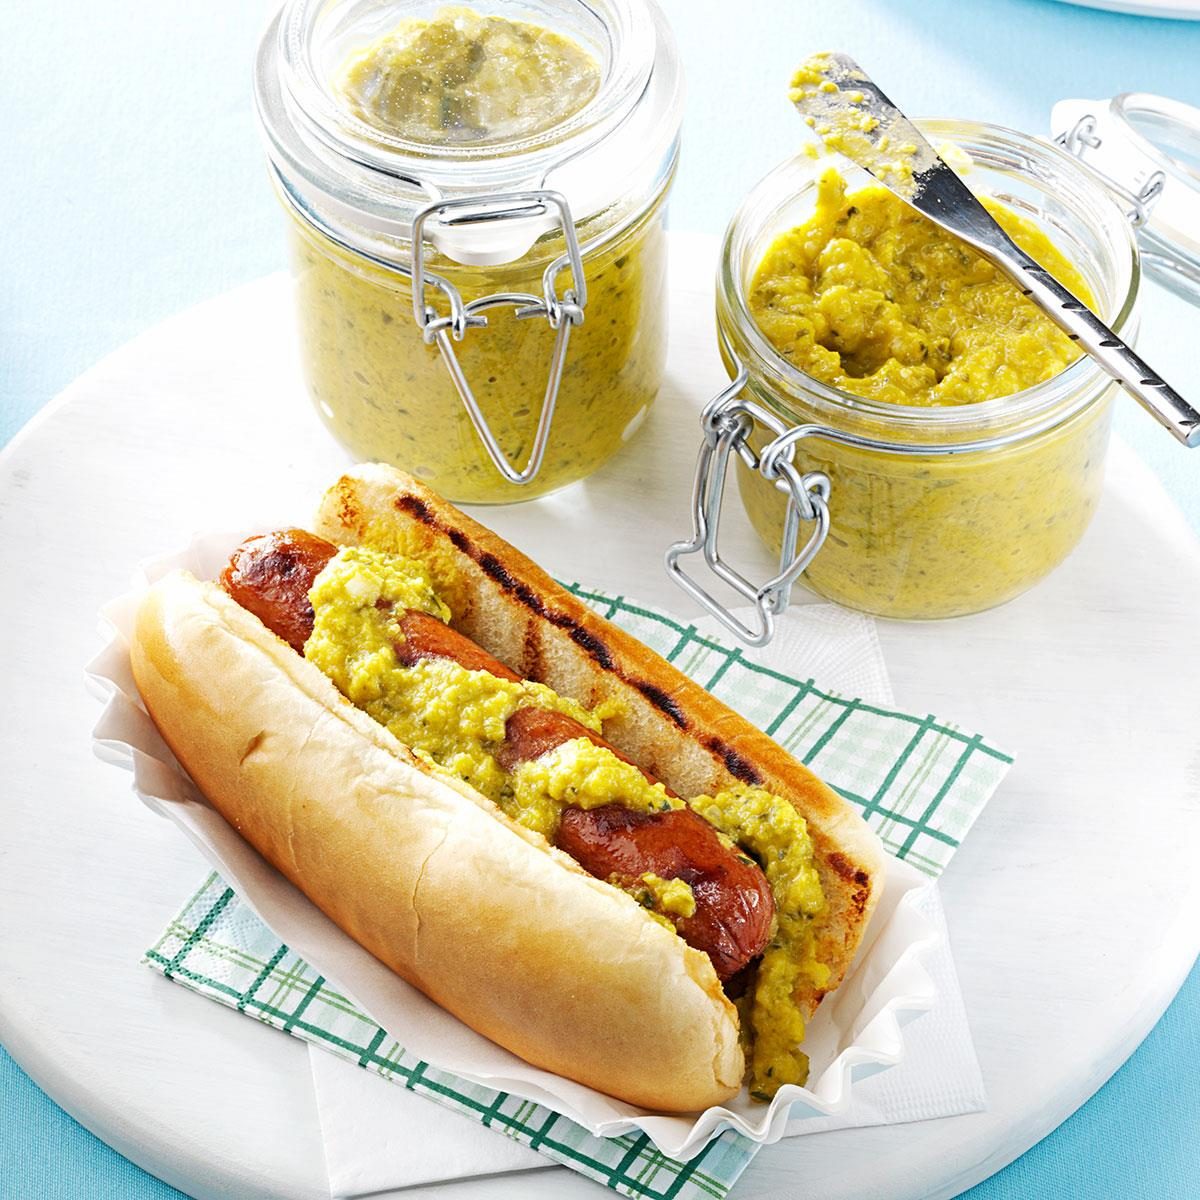 5 Fun + Delicious Hot Dog Toppings - Hot Dog Topping Ideas - kiyafries